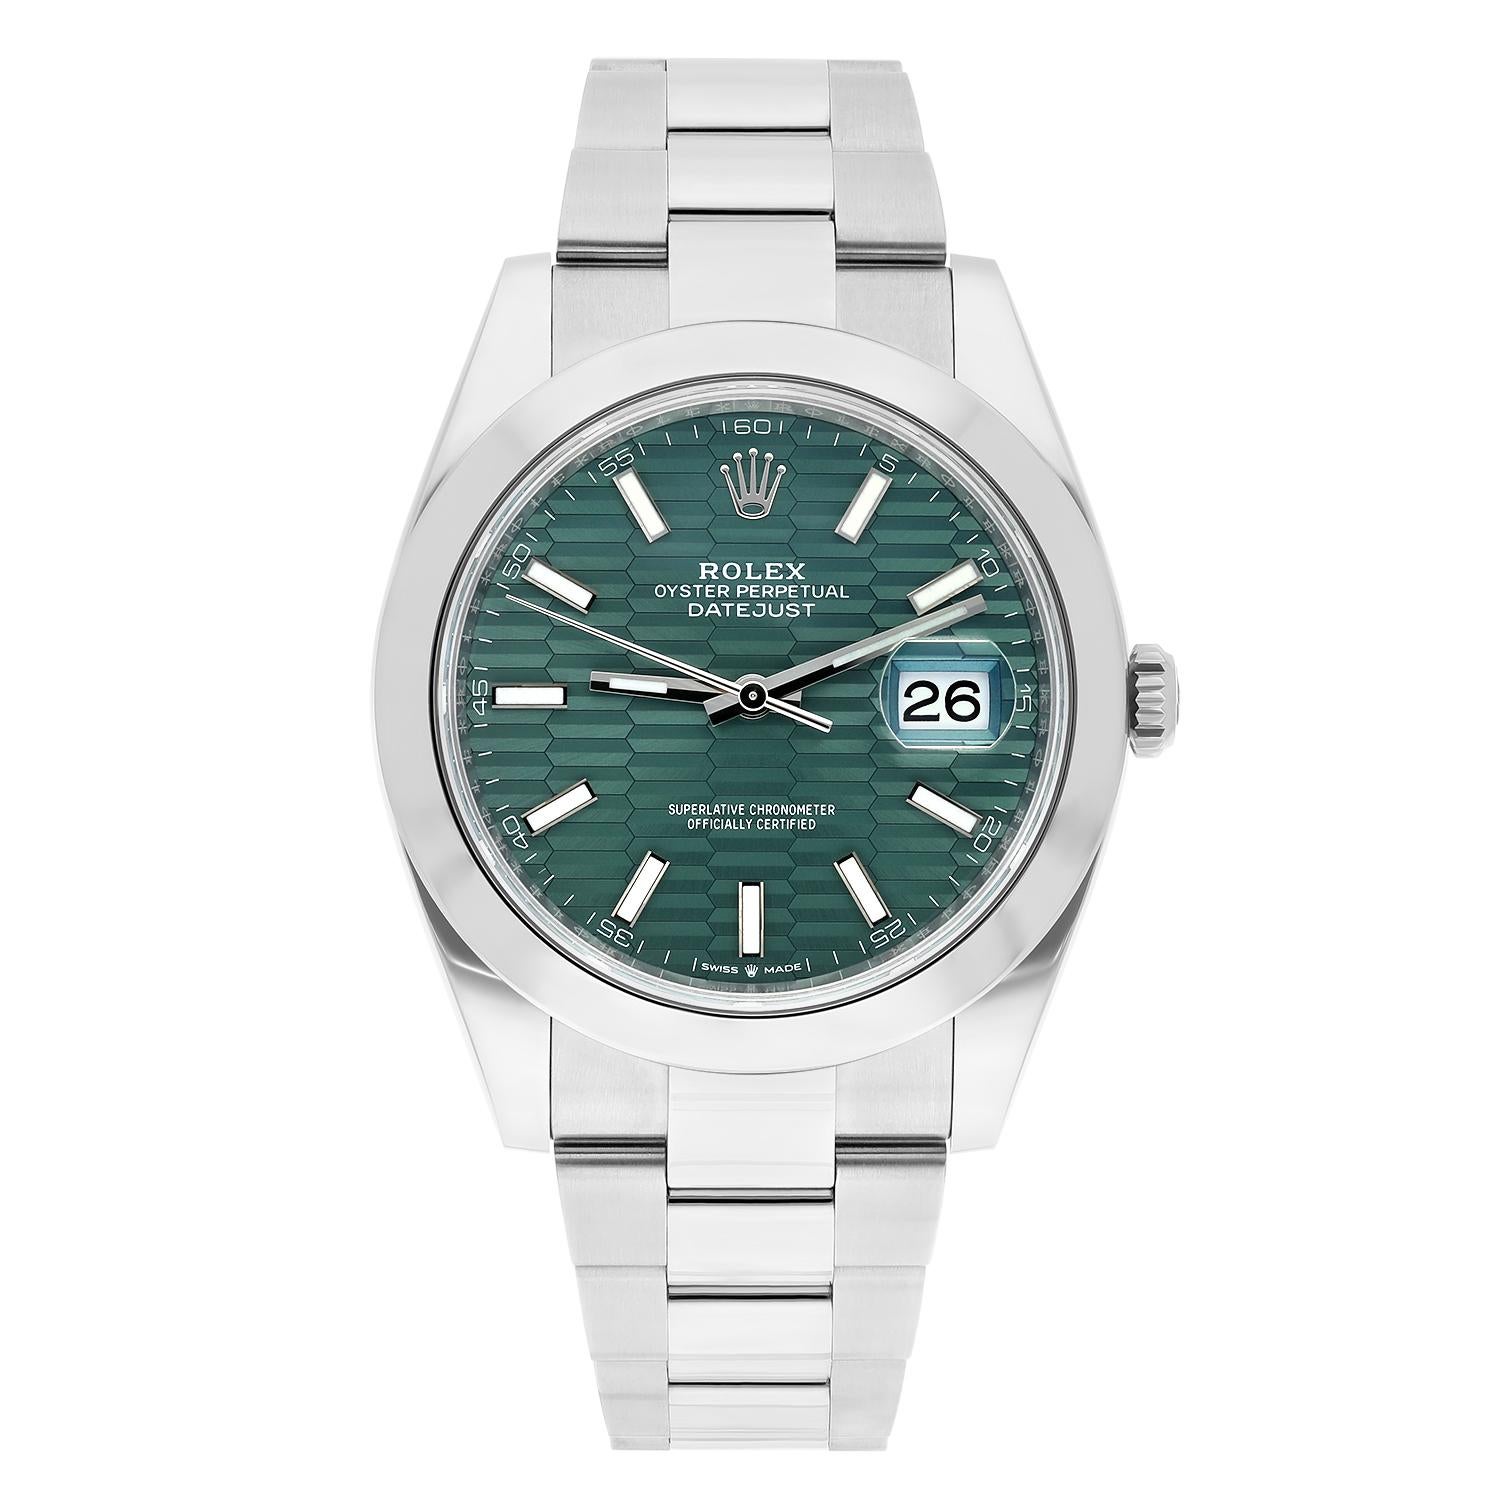 Rolex Datejust 41 Stahl grün Motiv Index Zifferblatt Herren Oyster Uhr ungetragen 126300

Der Verkauf erfolgt mit einer Rolex-Box und Rolex-Papieren. Die Herstellergarantie ist bis Februar 2028 gültig.